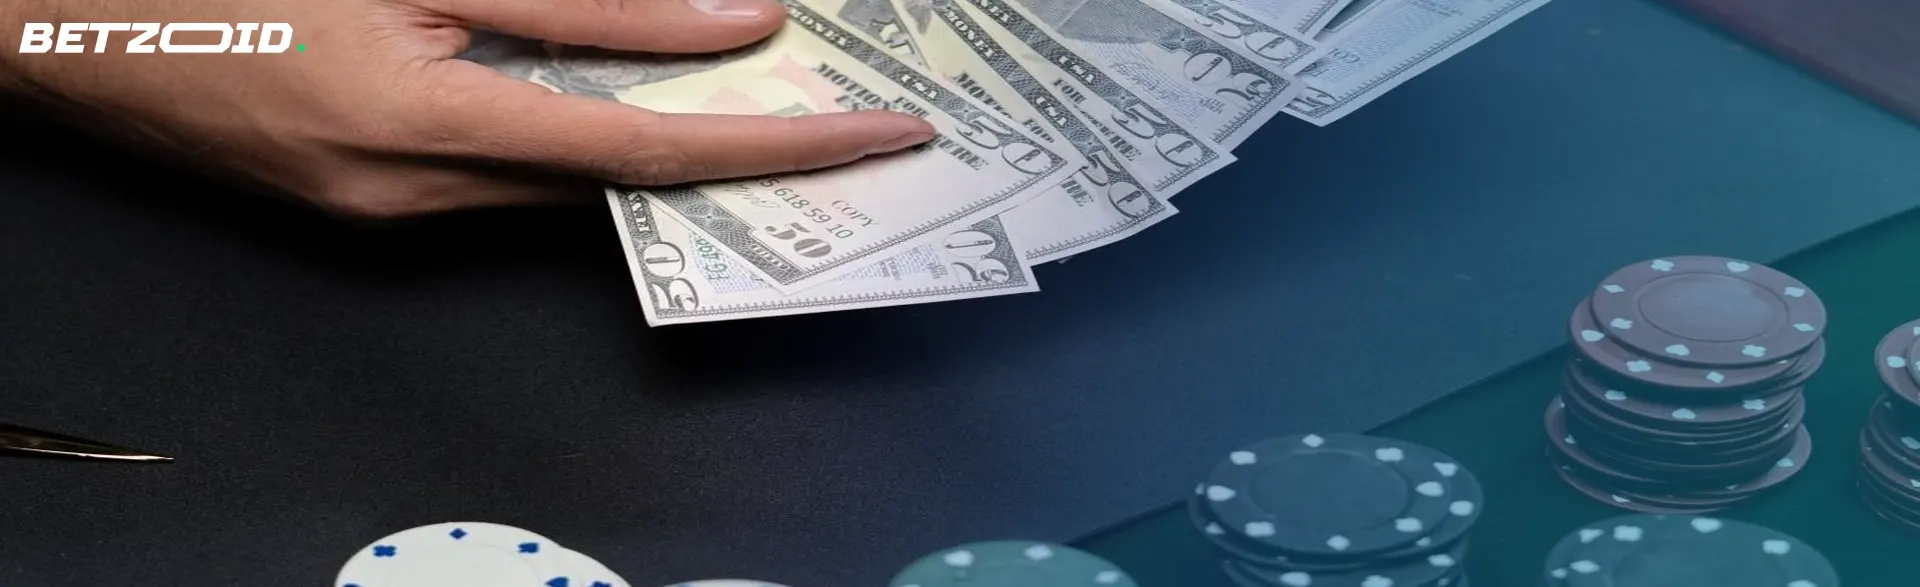 Manos contando dólares sobre una mesa de casino con fichas de póker, indicativo de juegos accesibles en sitios de casinos con apuestas bajas en México.